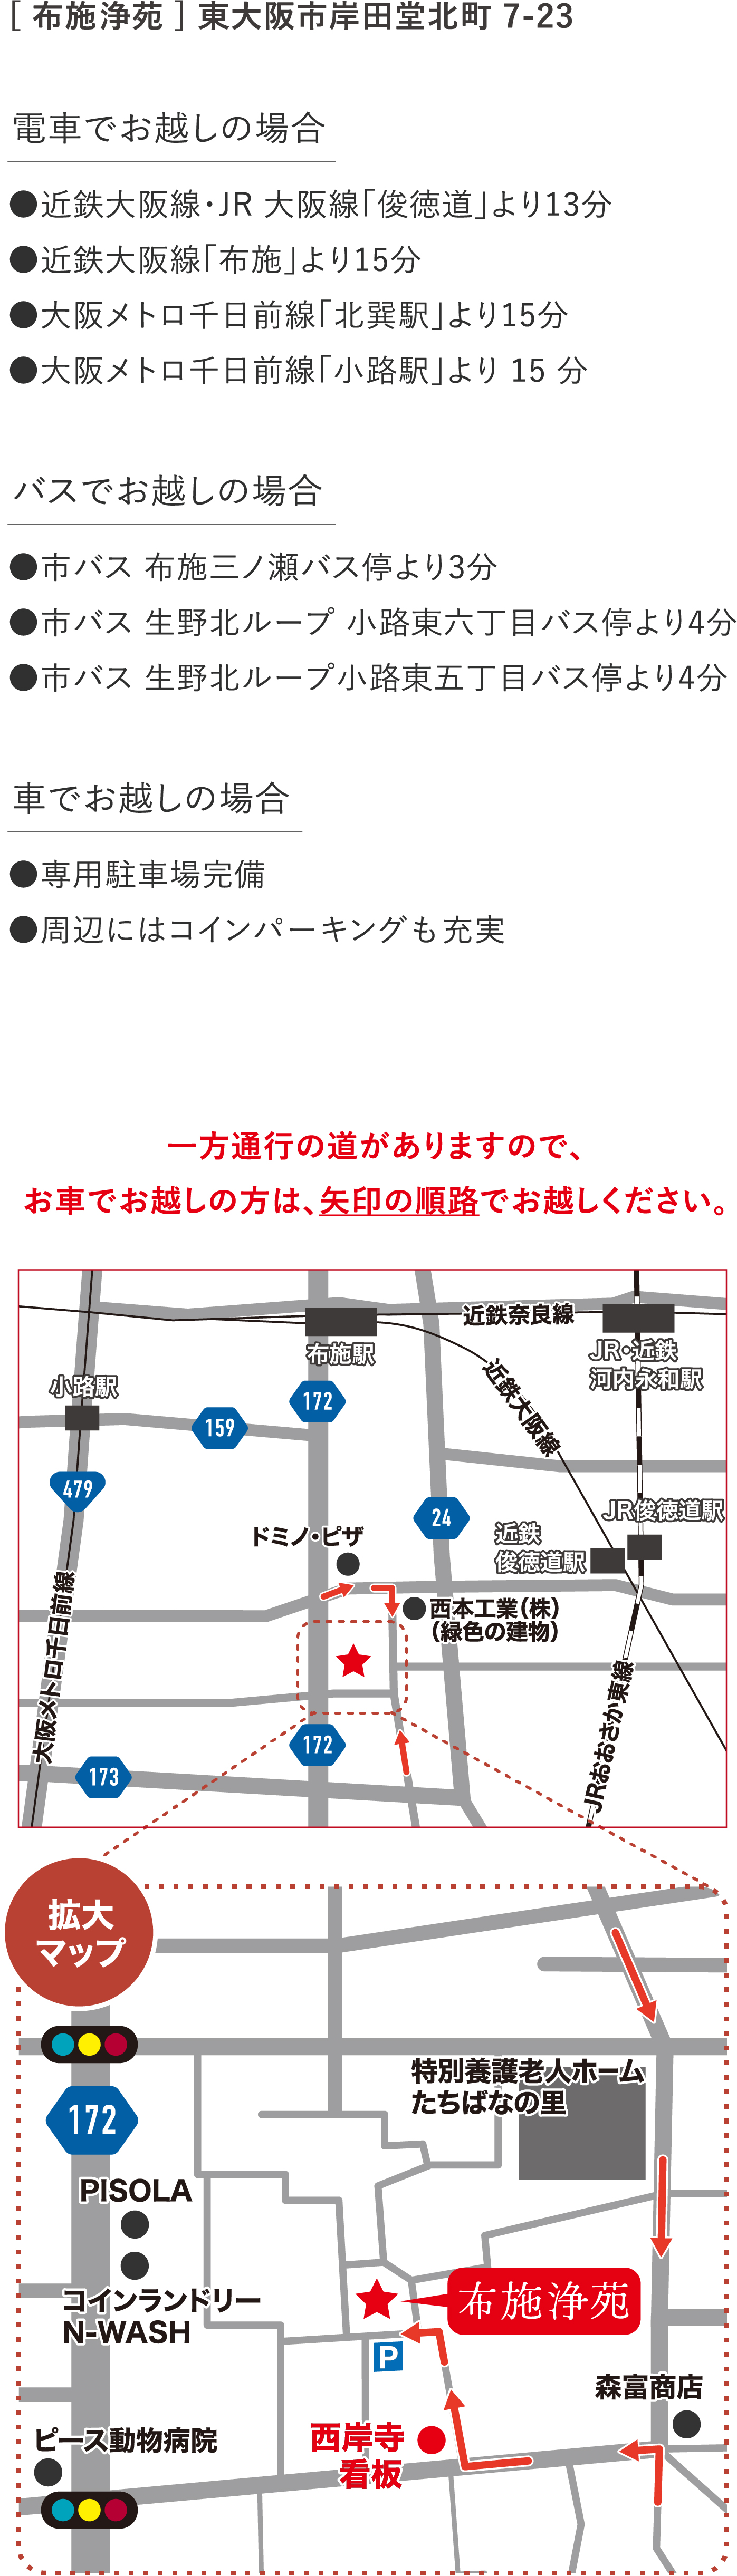 電車でお越しの場合は、近鉄大阪線・JR 大阪線「俊徳道」より13分、近鉄大阪線「布施」より15分、大阪メトロ千日前線「北巽駅」より15分 、大阪メトロ千日前線「小路駅」より15分。バスでお越しの場合は、市バス 布施三ノ瀬バス停より3分、市バス 生野北ループ 小路東六丁目バス停より4分、市バス 生野北ループ小路東五丁目バス停より4分。車でお越しの場合は、専用駐車場完備、周辺にはコインパーキングも充実